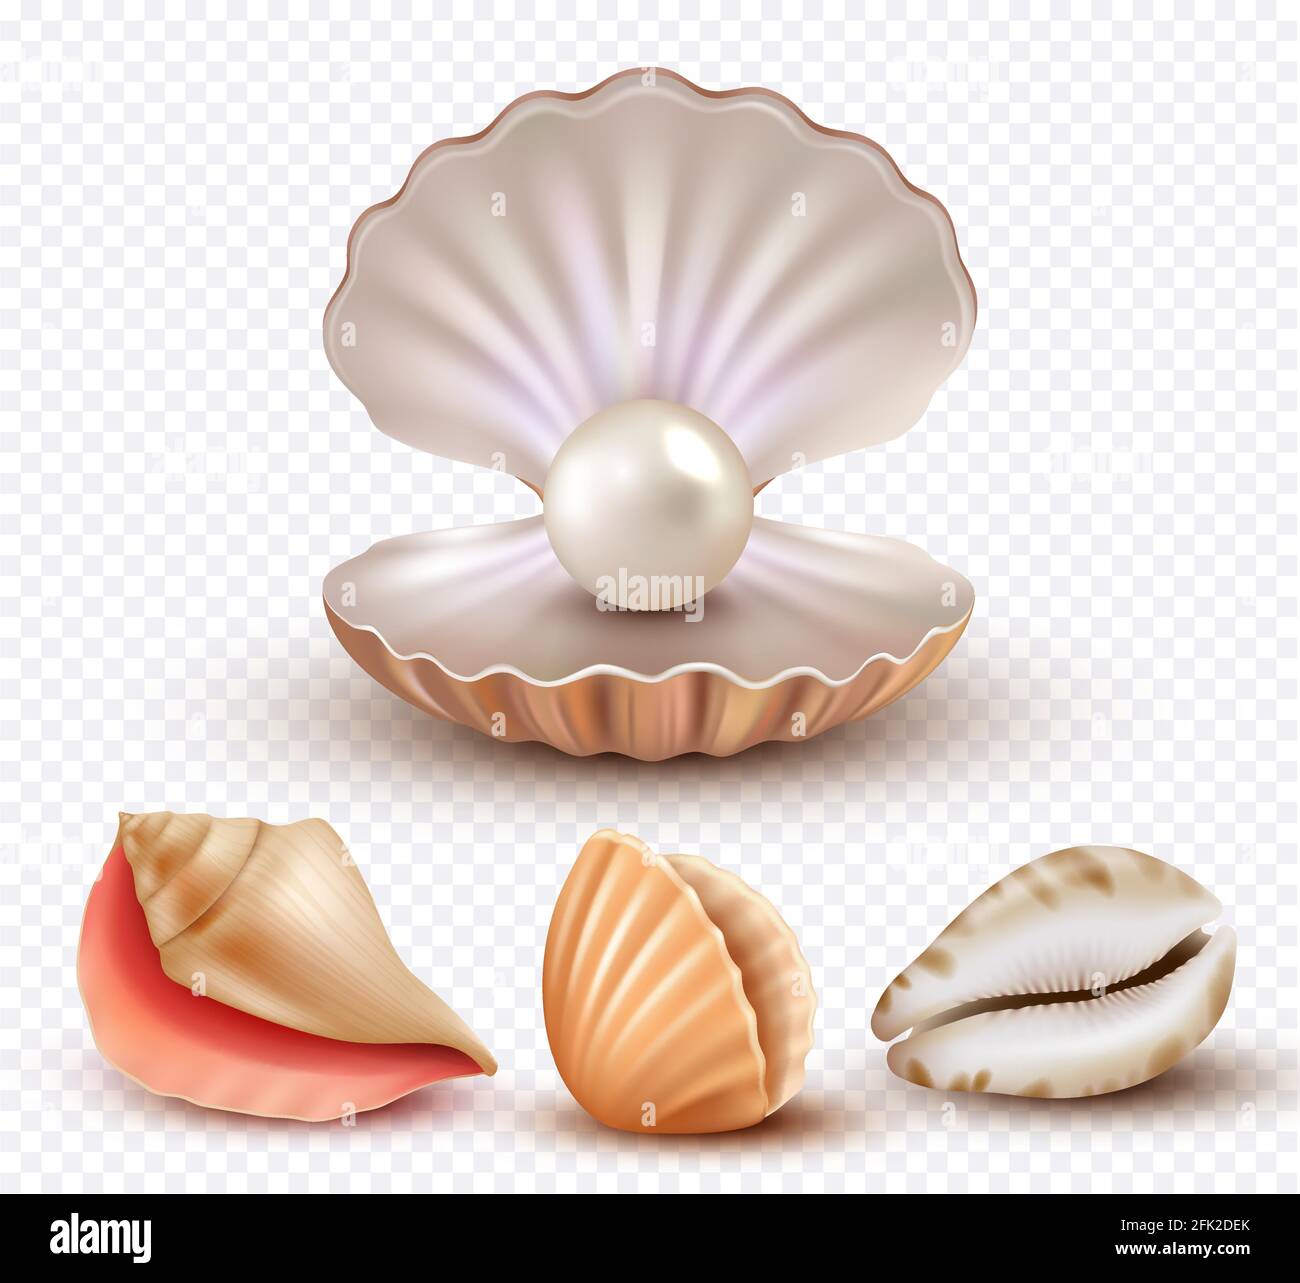 Realistische Muschelschalen. Weichtiere Muscheln Meer Strand Objekte Luxus Perlen öffnen concha Vektor Kollektion Stock Vektor